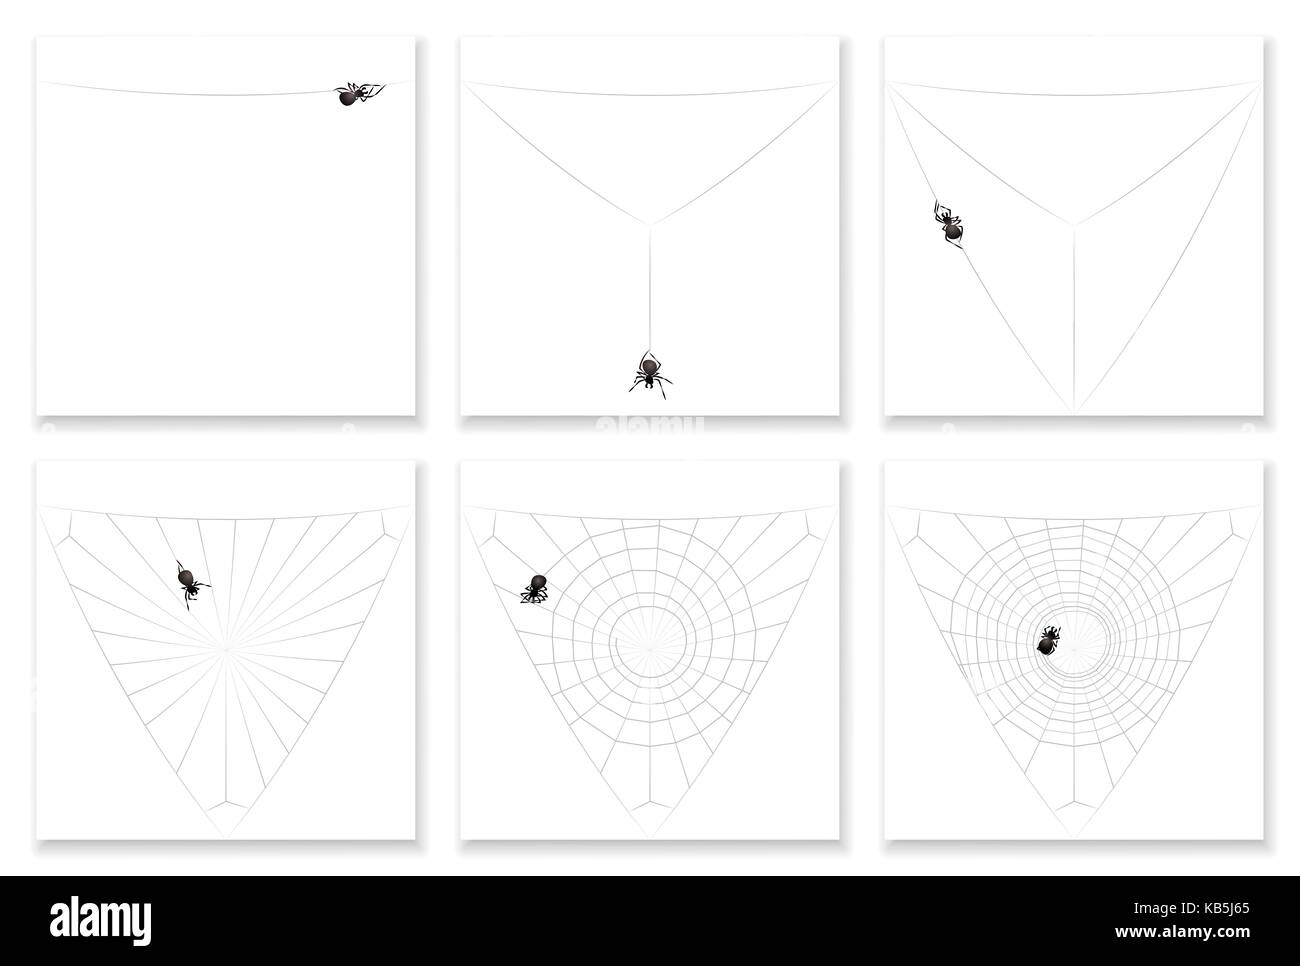 Cob-web-Bauanleitung in sechs Schritten - beobachten Sie eine beschäftigte Black Spider seine spiralförmige Muster natürlicher Seide artwork ausfüllen. Stockfoto